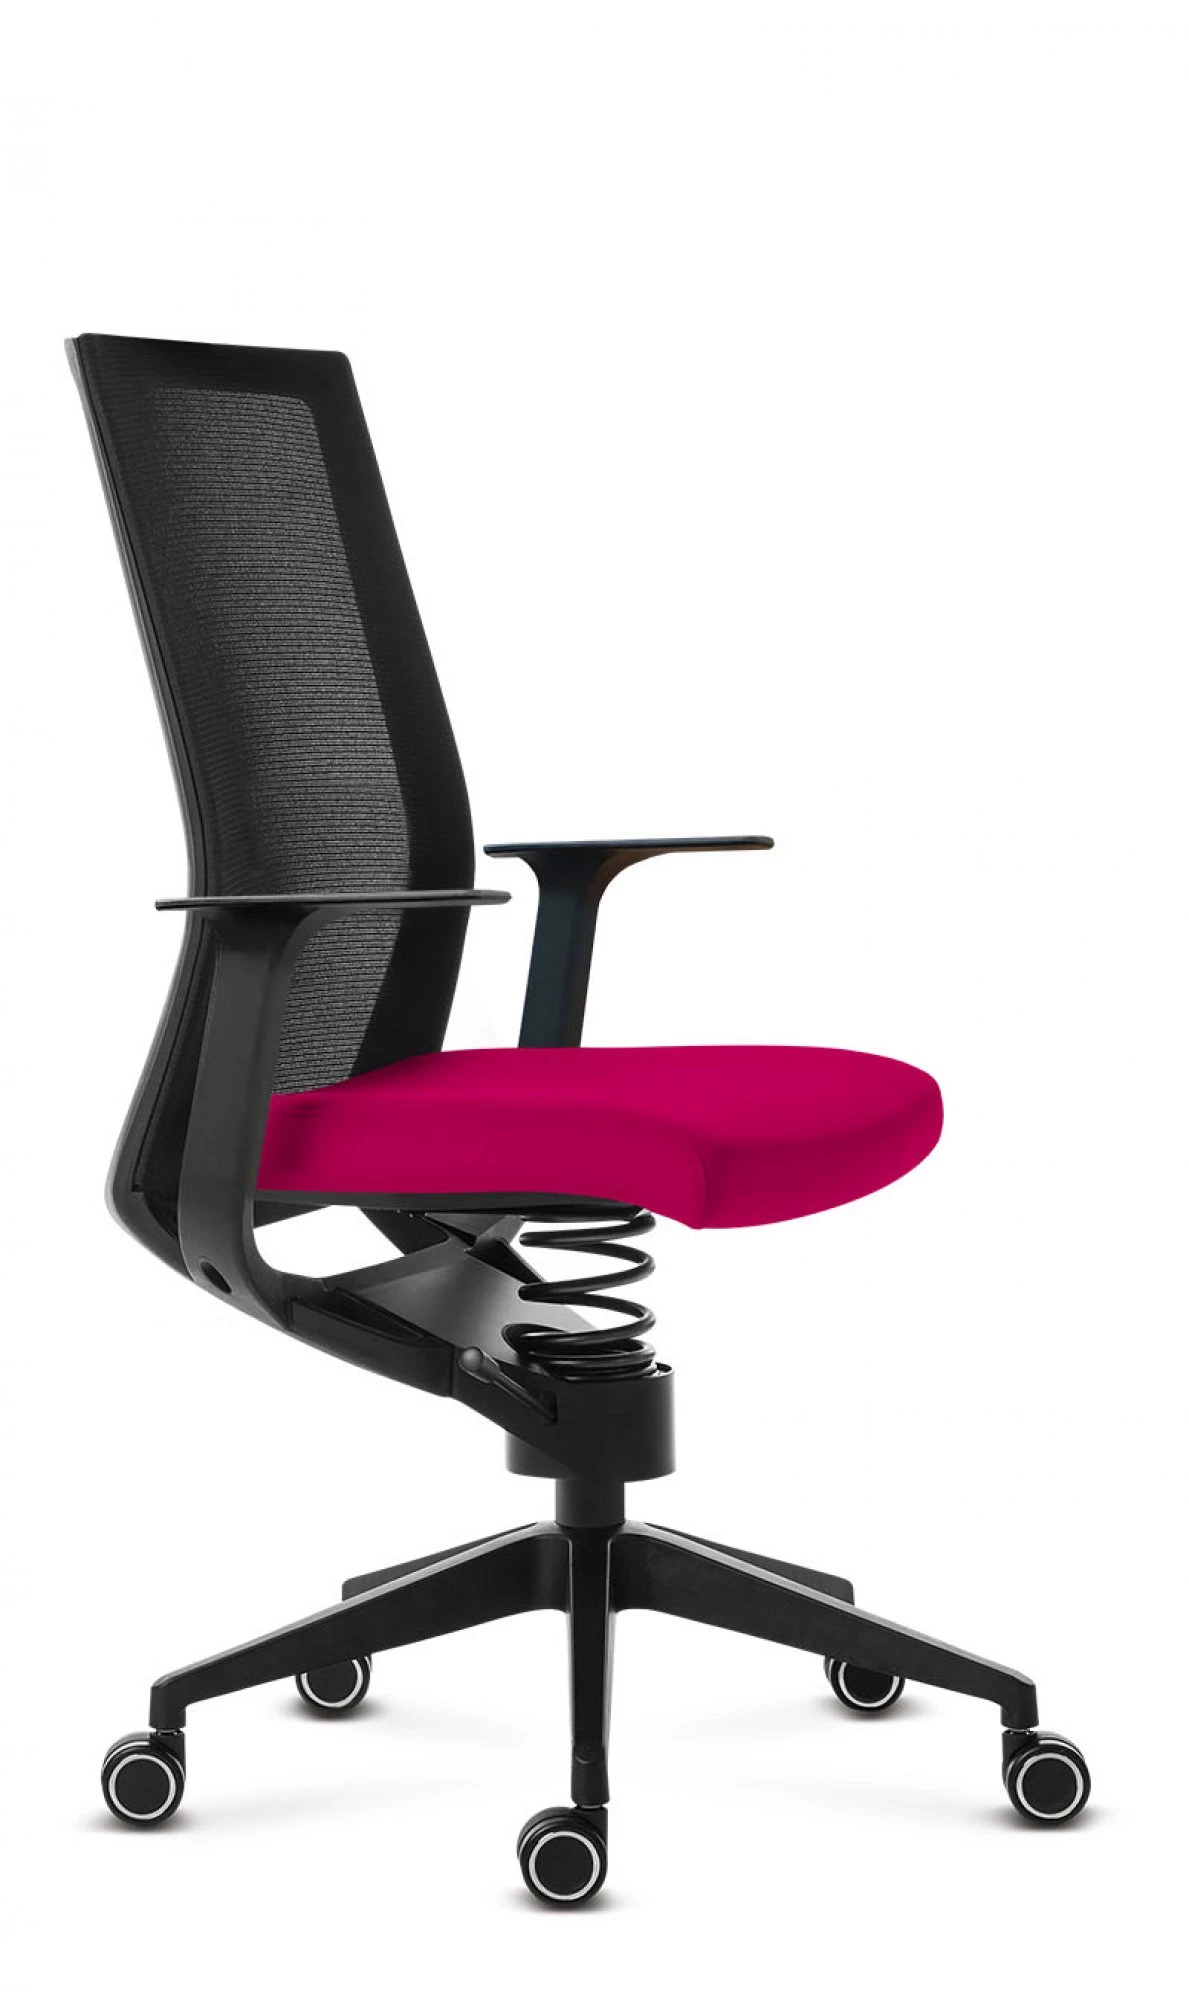 Zdravotný kancelársky stolička Adaptic EASY Bordo